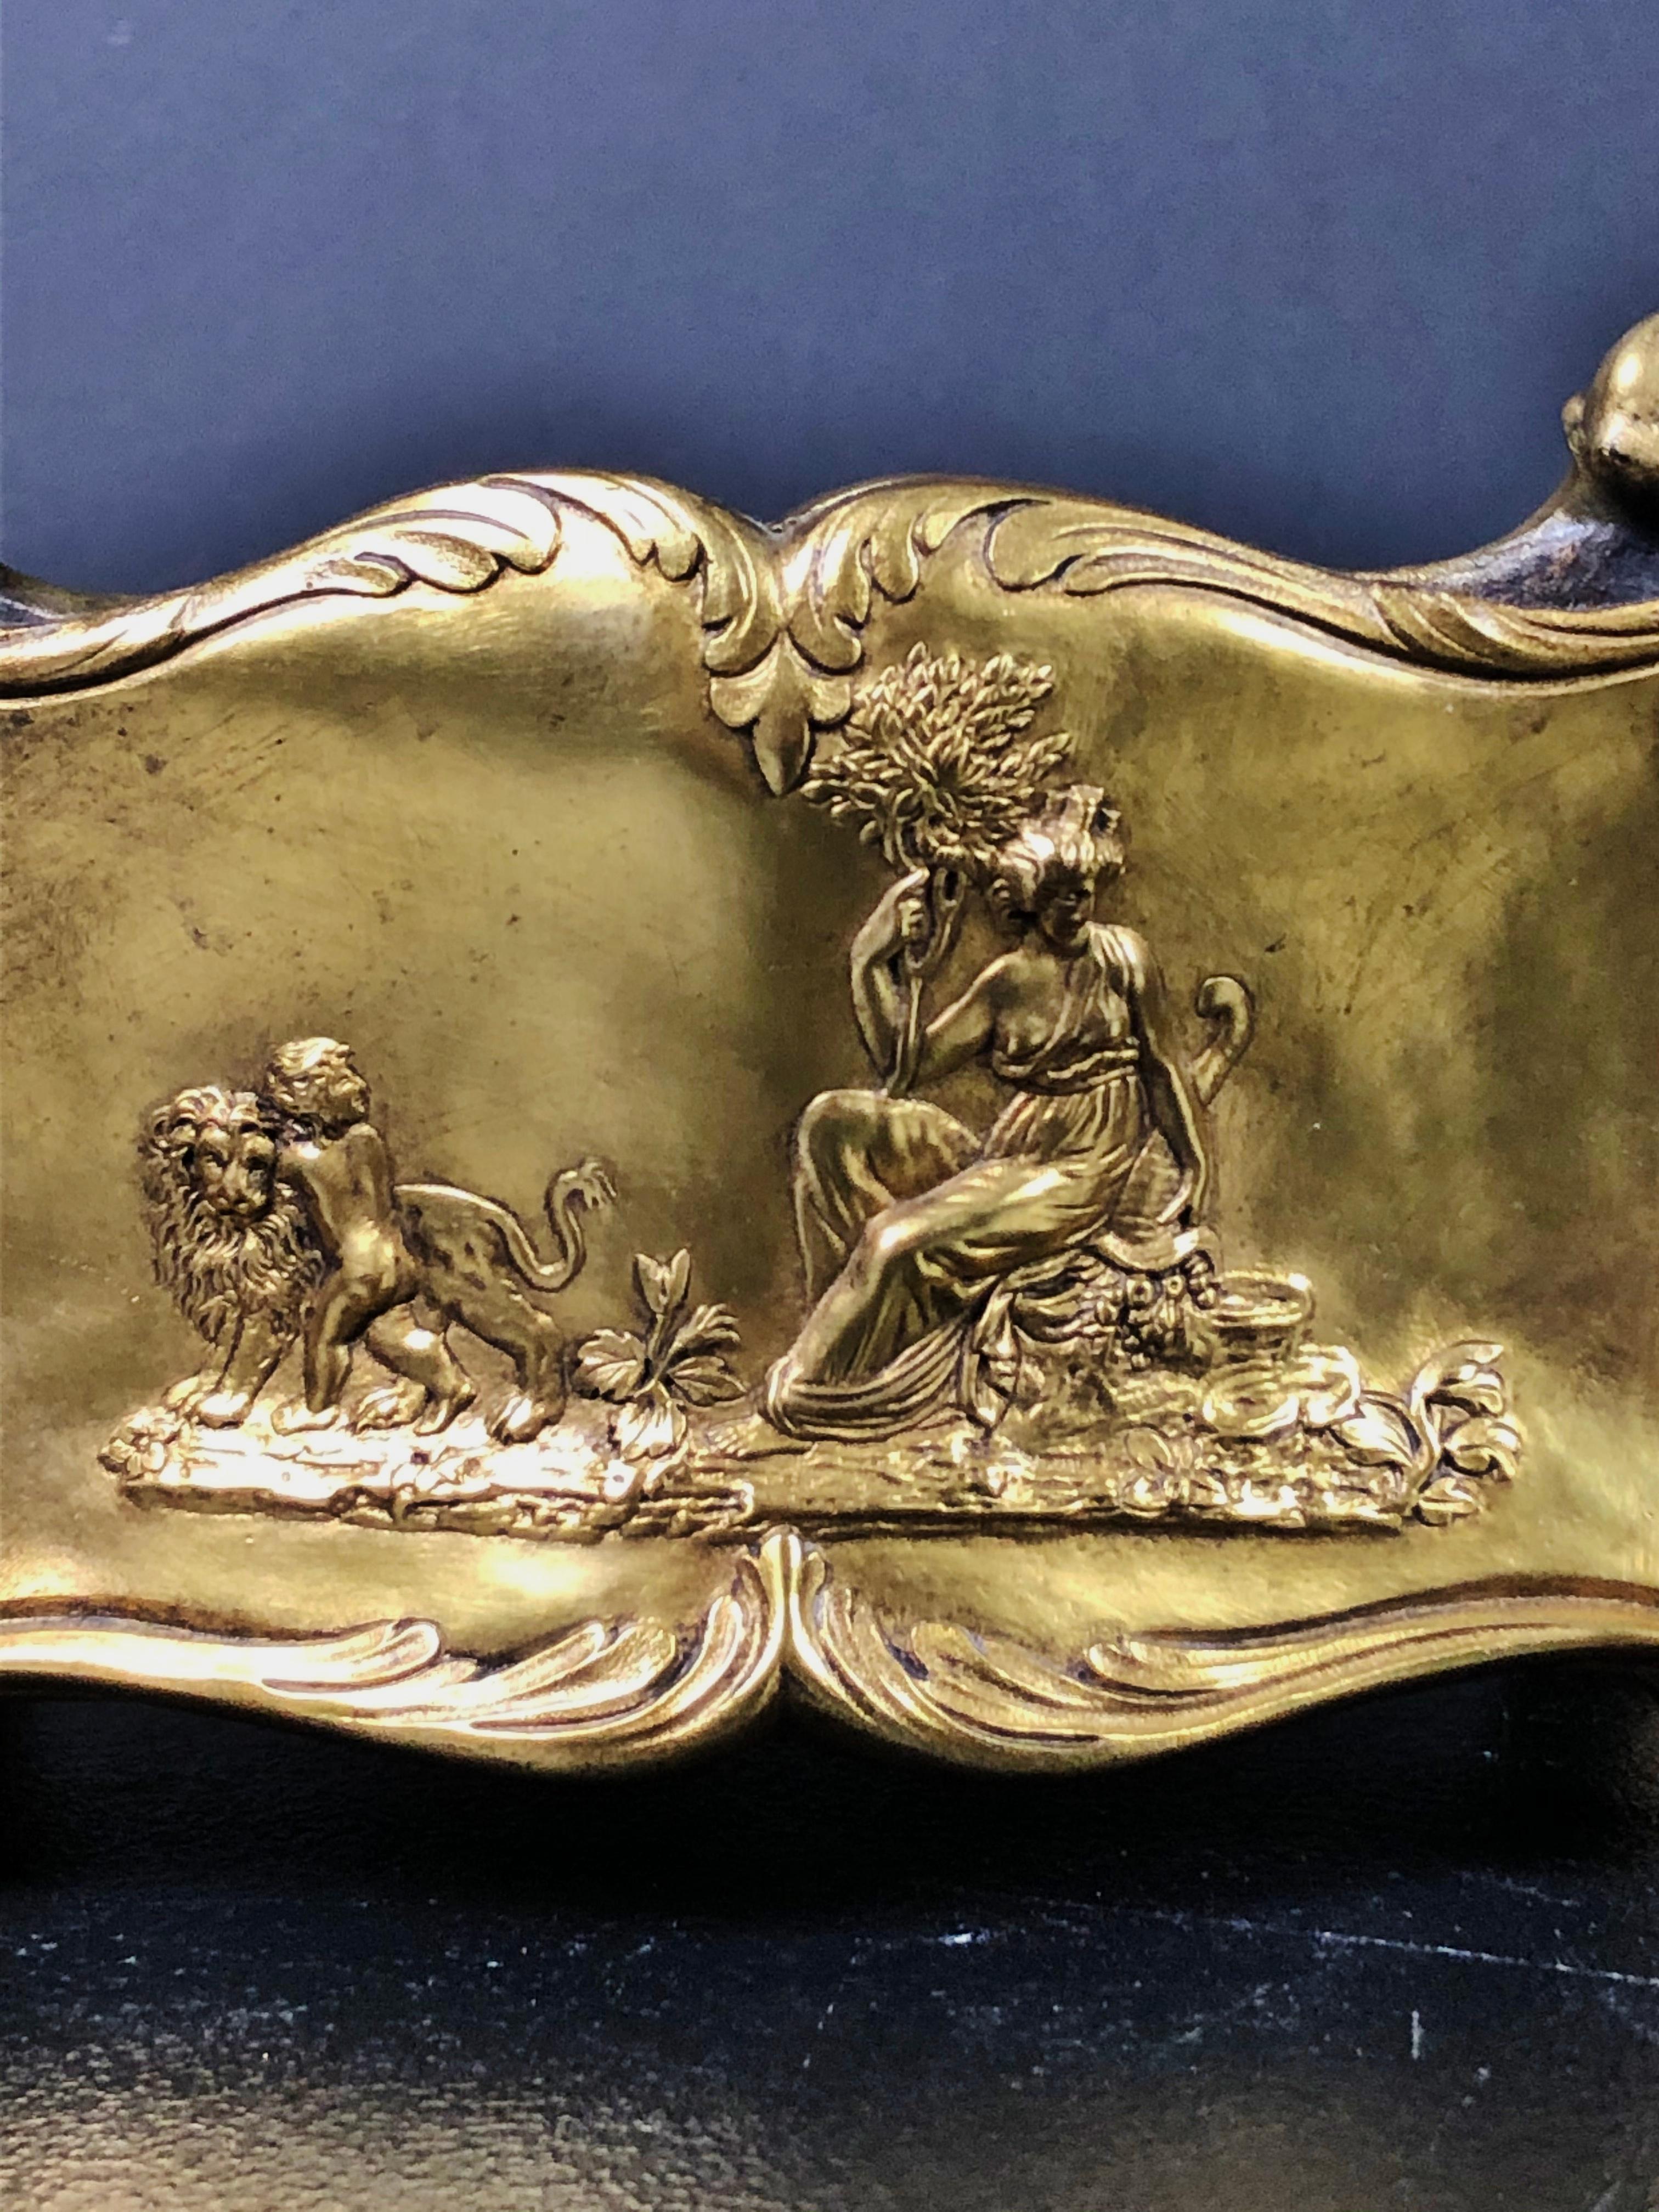 Französisch 19. Jahrhundert vergoldete Bronze Übertopf Pflanzer. Louis XV-Stil mit figuralen Tafeln mit Frauen und Putten. Löwe und Adler. Venus in einer Muschel, die von einem Delphin gezogen wird.